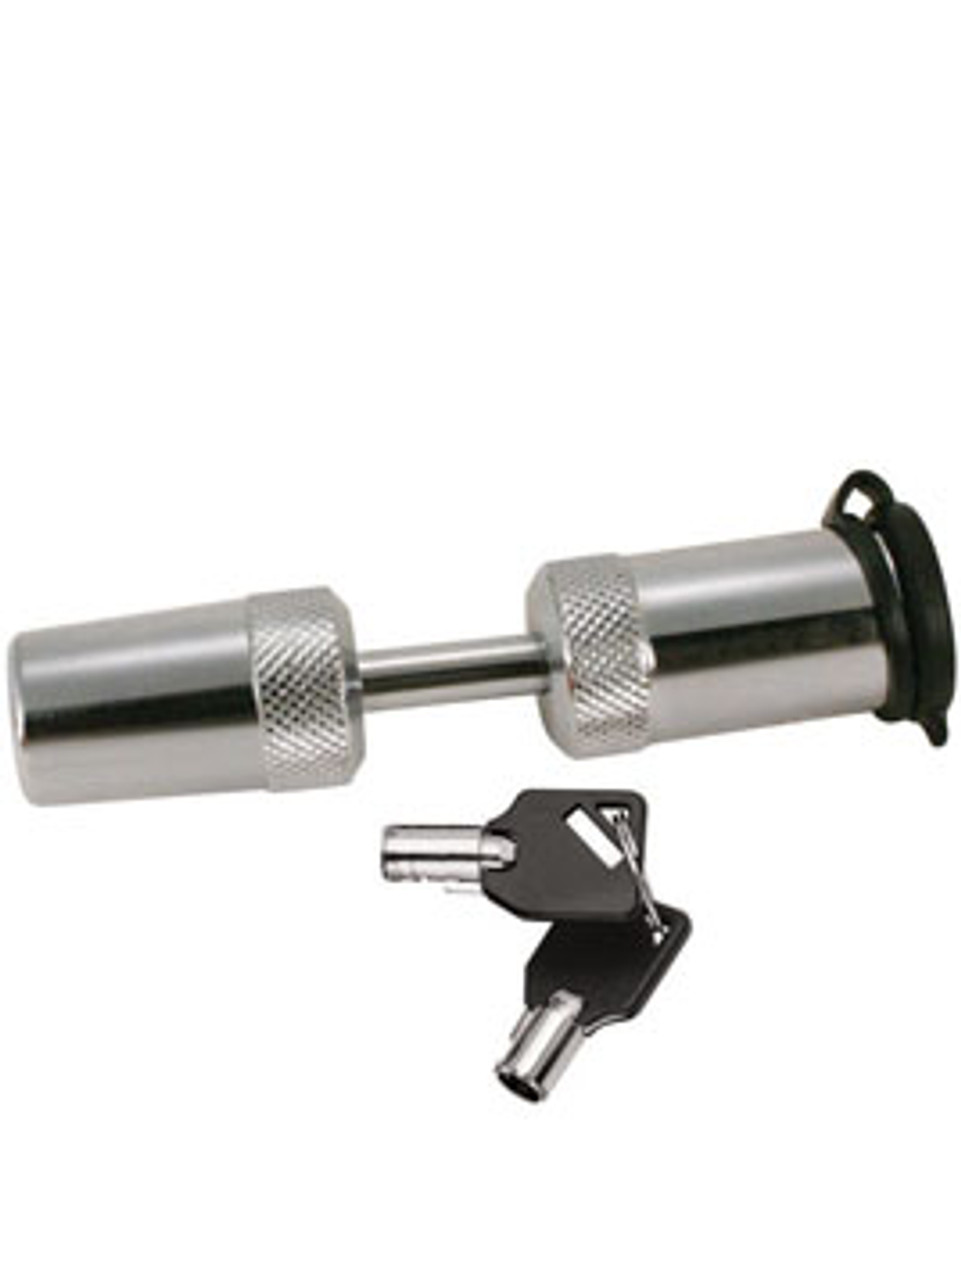 7690 --- Deadbolt Coupler Lock with 1/2" Span